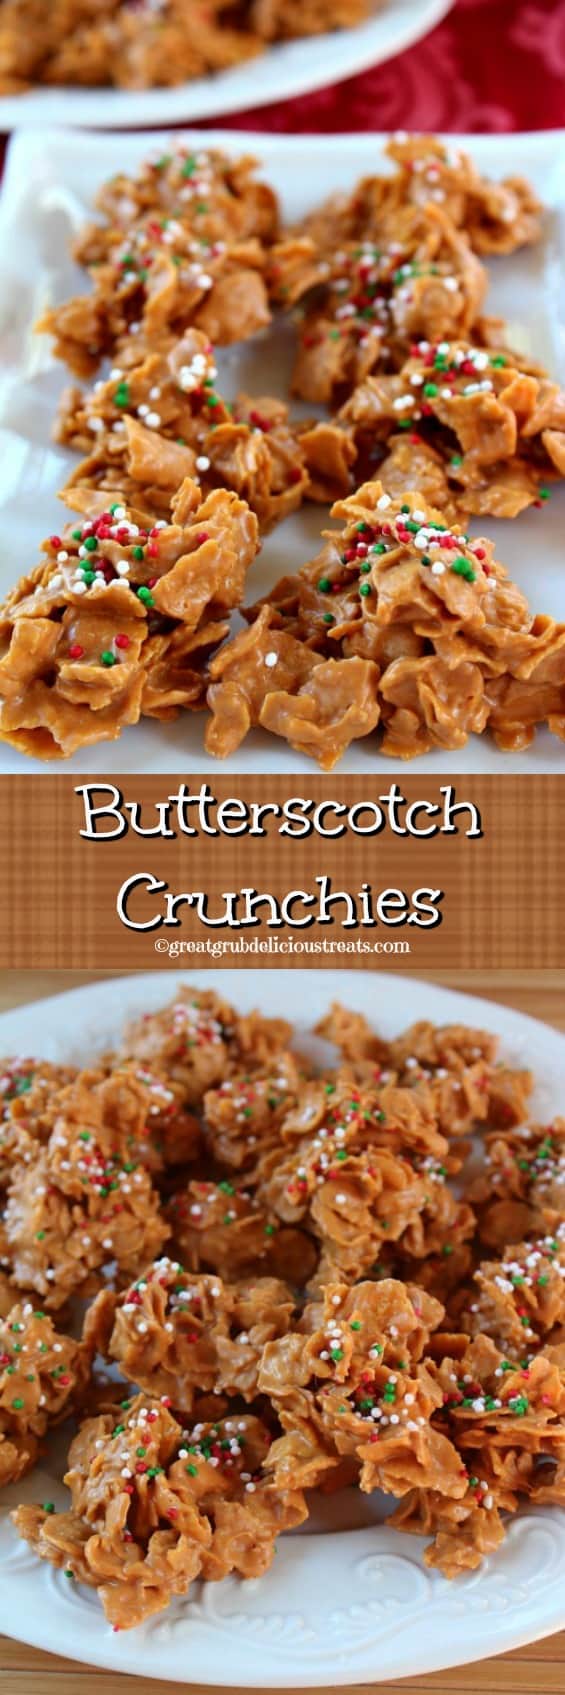 Butterscotch Crunchies